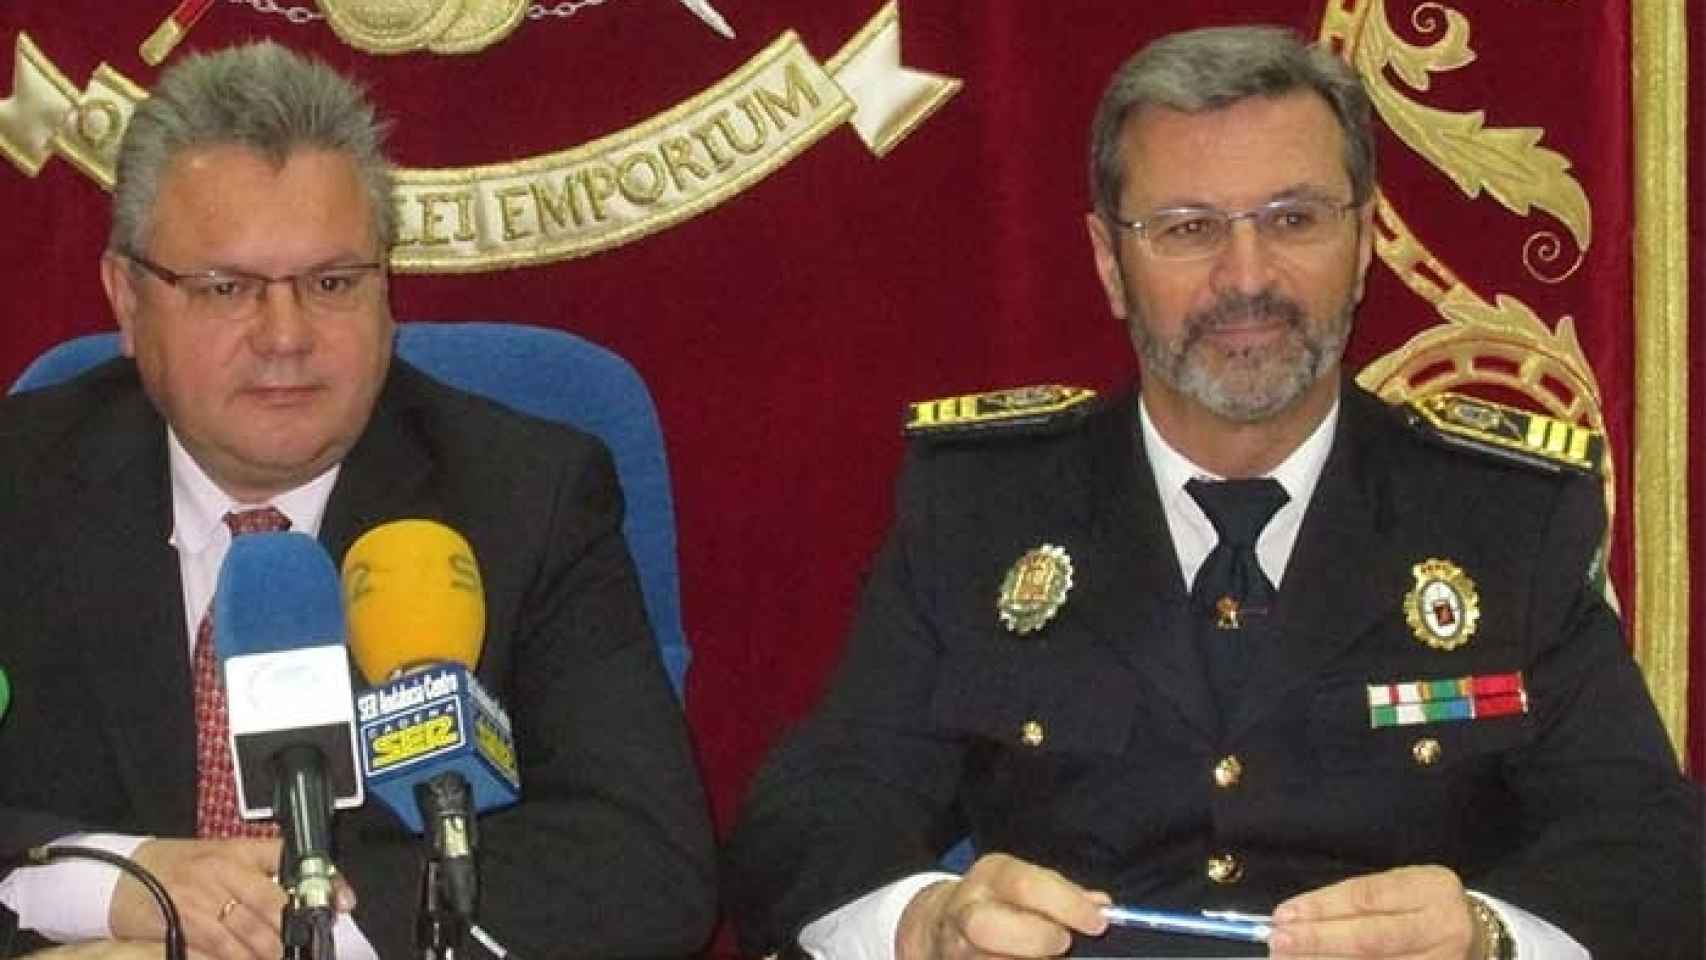 El alcalde de Puente Genil, Esteban Morales, y el exjefe de la policía local de la población cordobesa, Lorenzo Humánez.